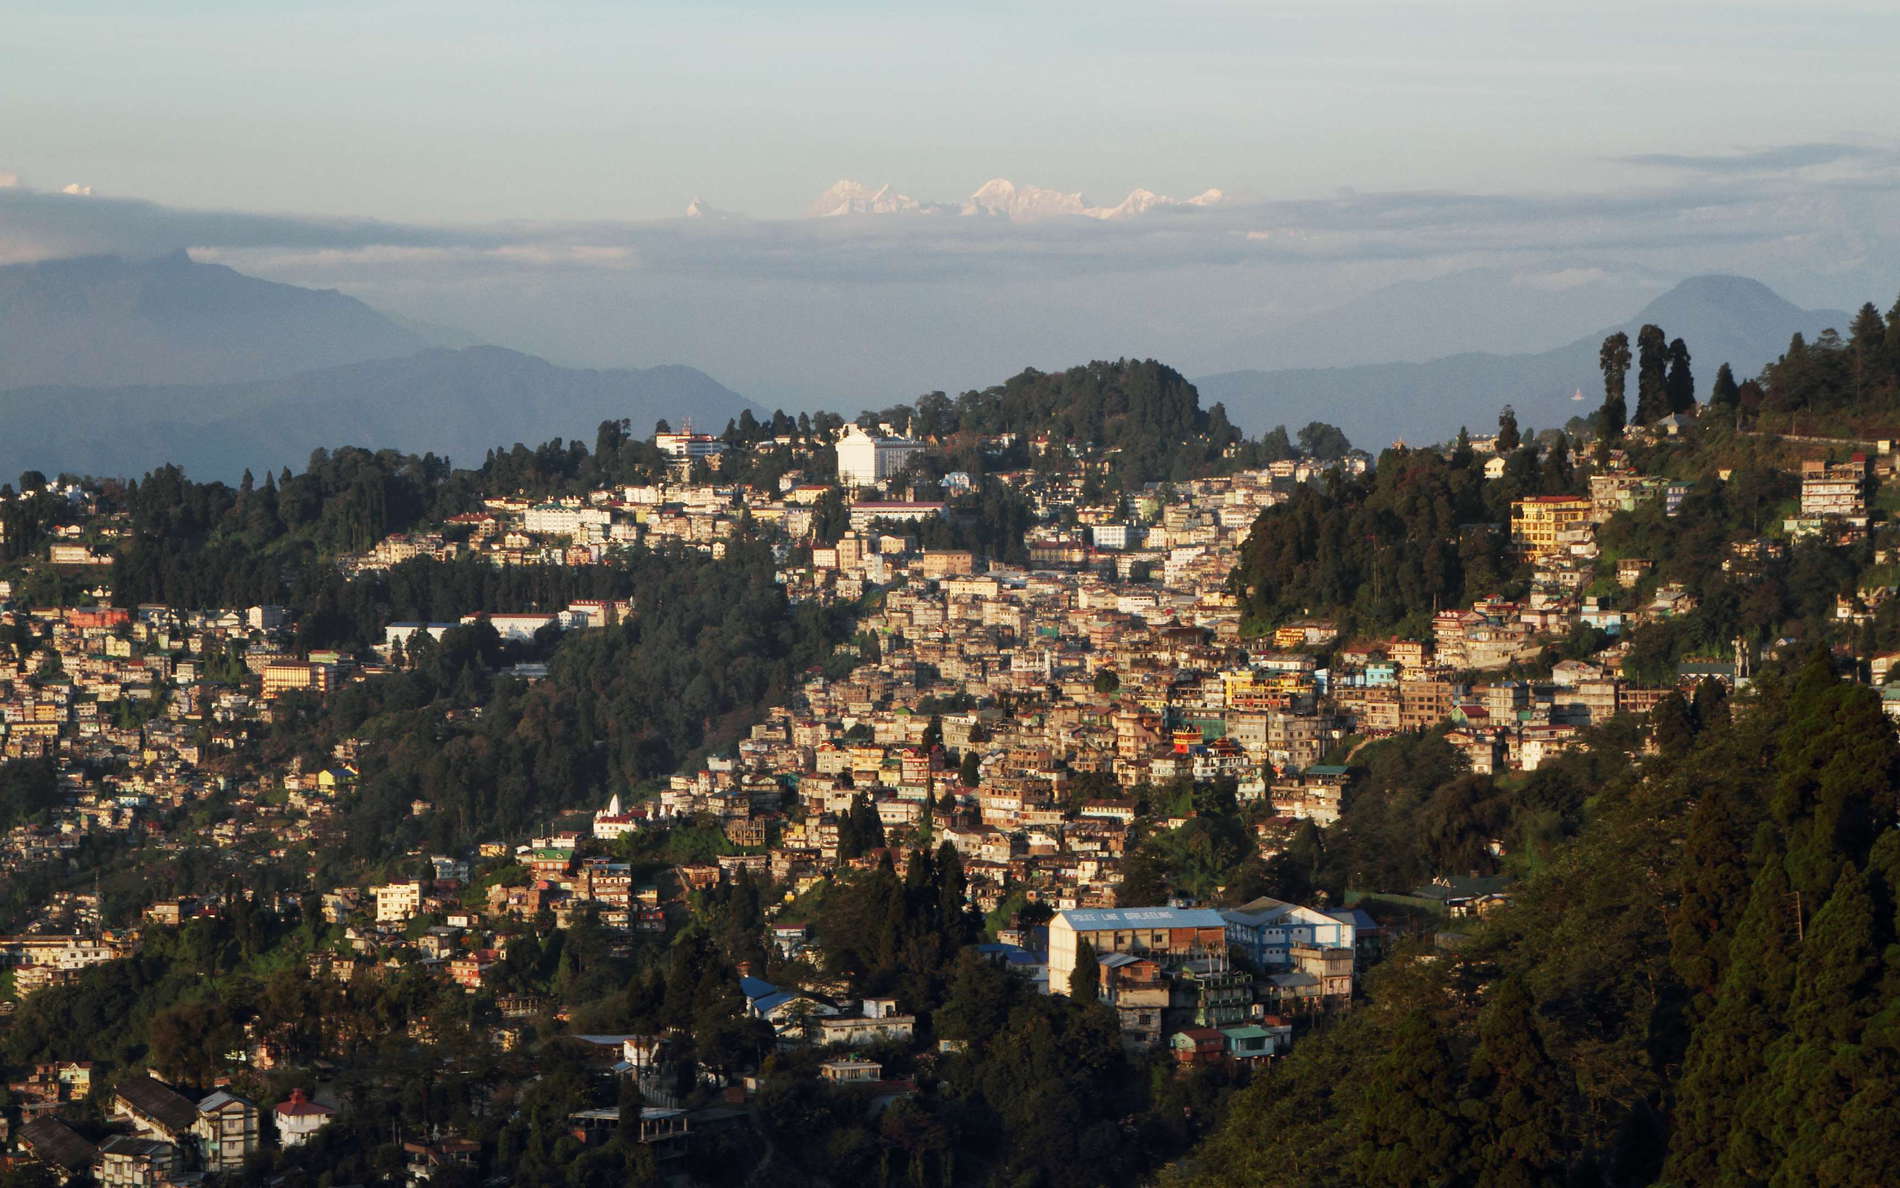 Darjeeling and Shudu Tsenpa